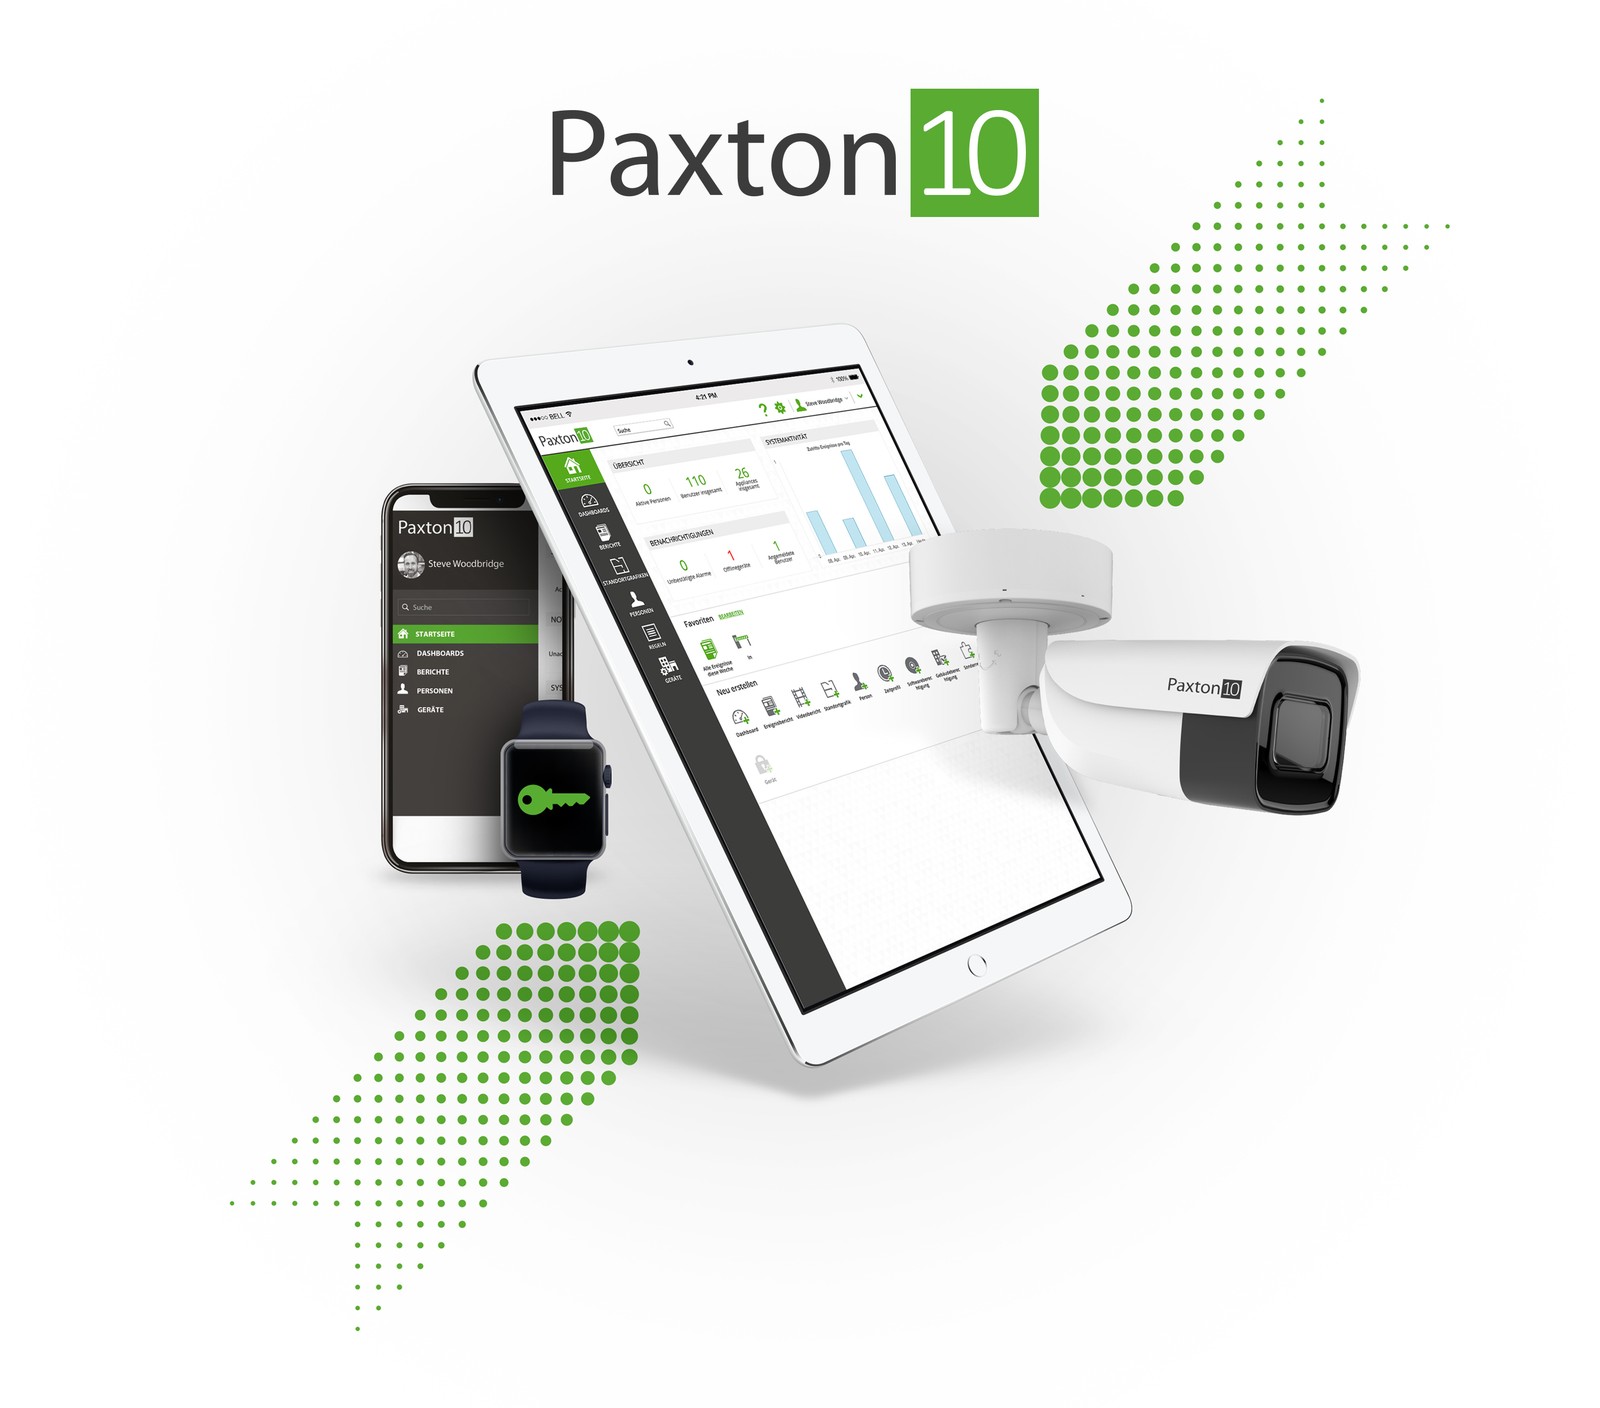 Paxton kündigt die Markteinführung des neuen Zutrittskontroll- und Videomanagementsystems Paxton 10 mit einer Bedieneroberfläche in Deutschland an.